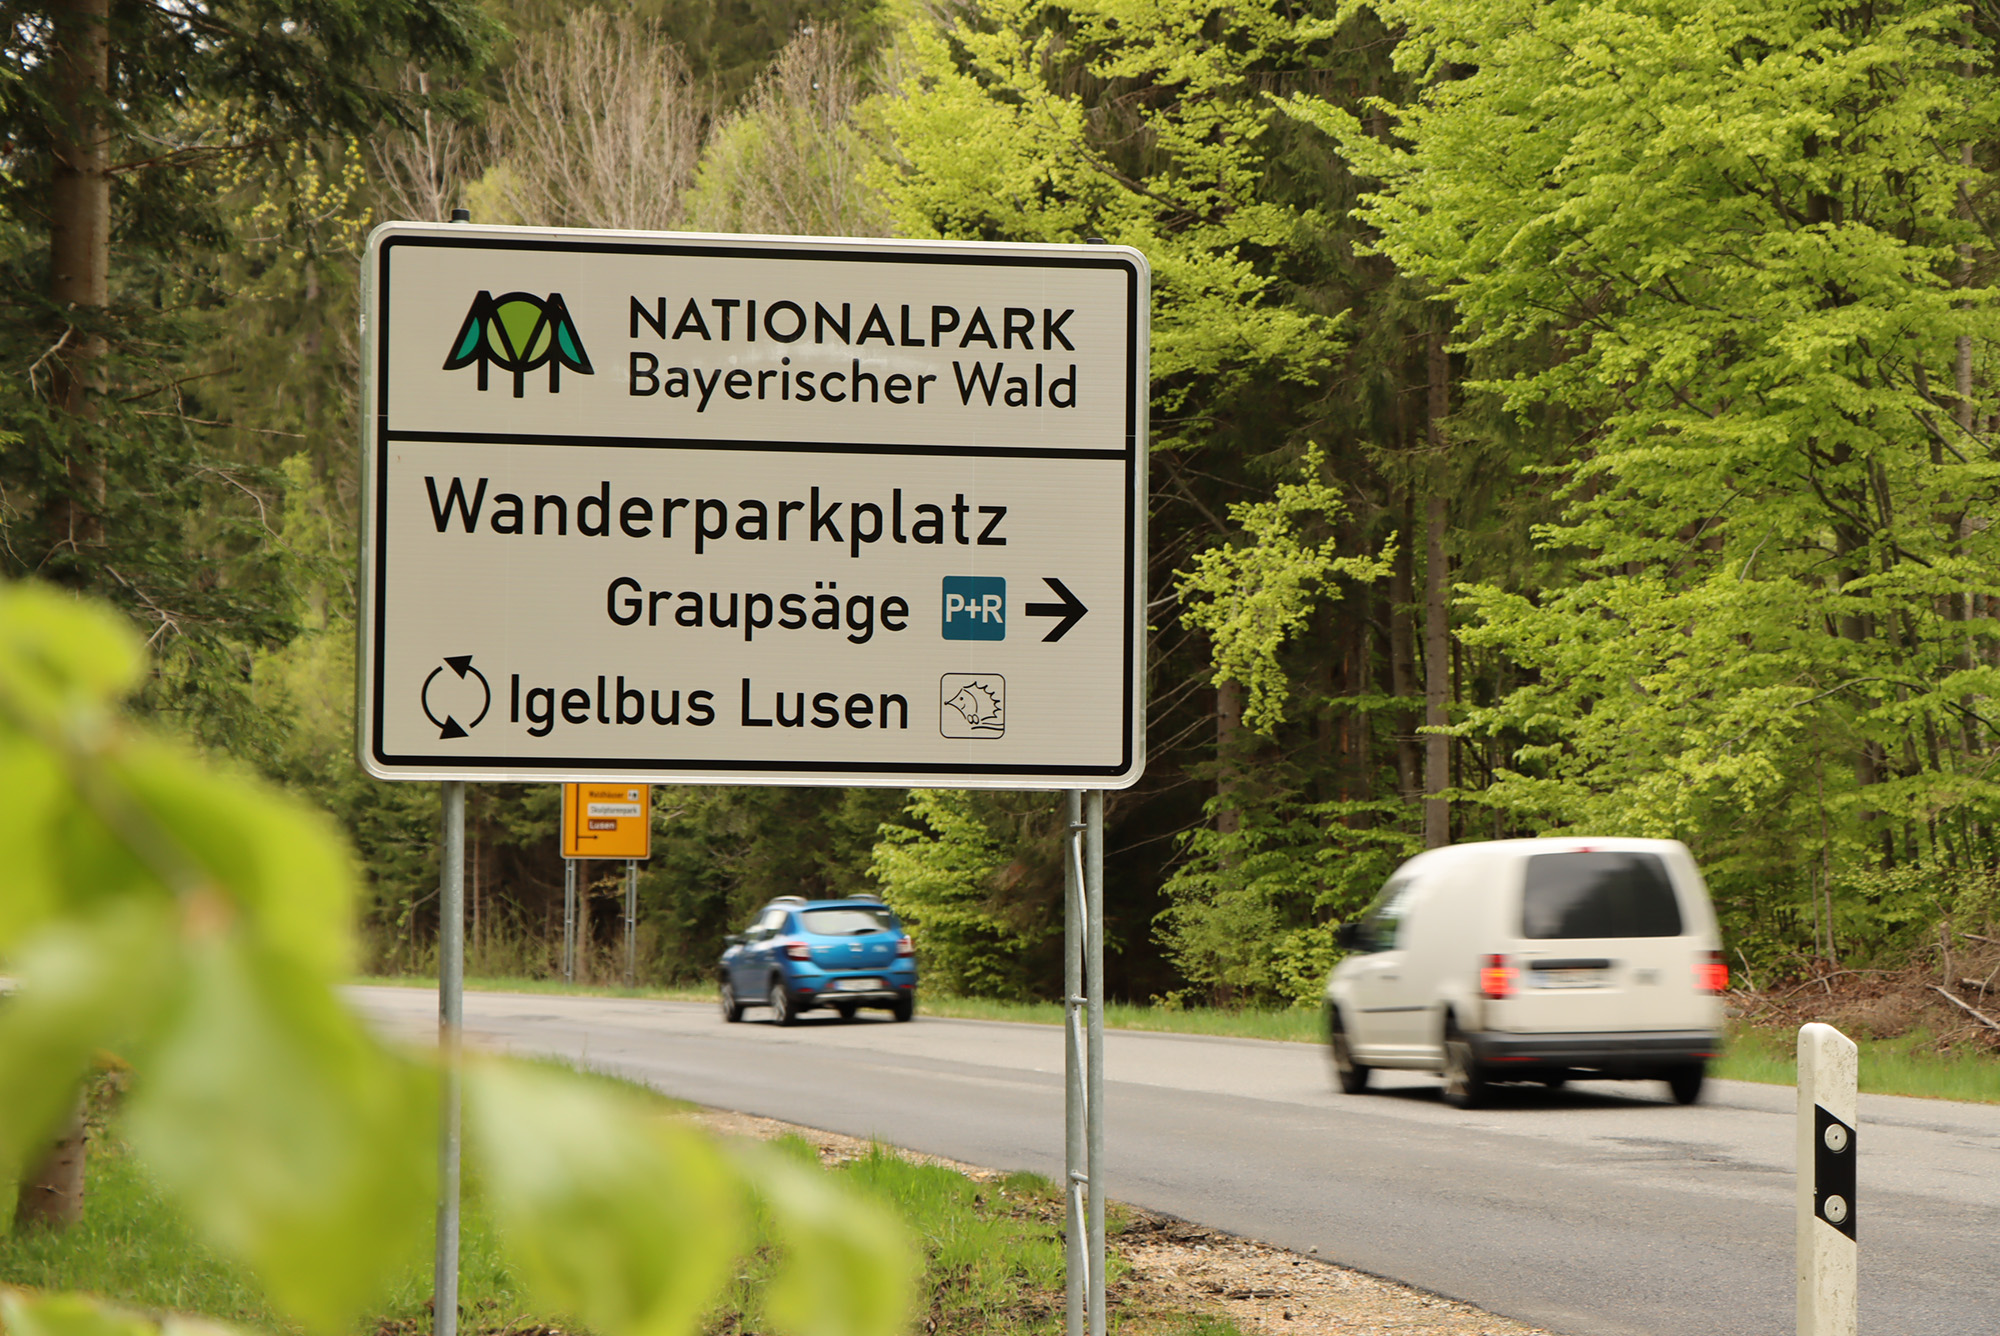 Wanderparkplatz Graupsäge 